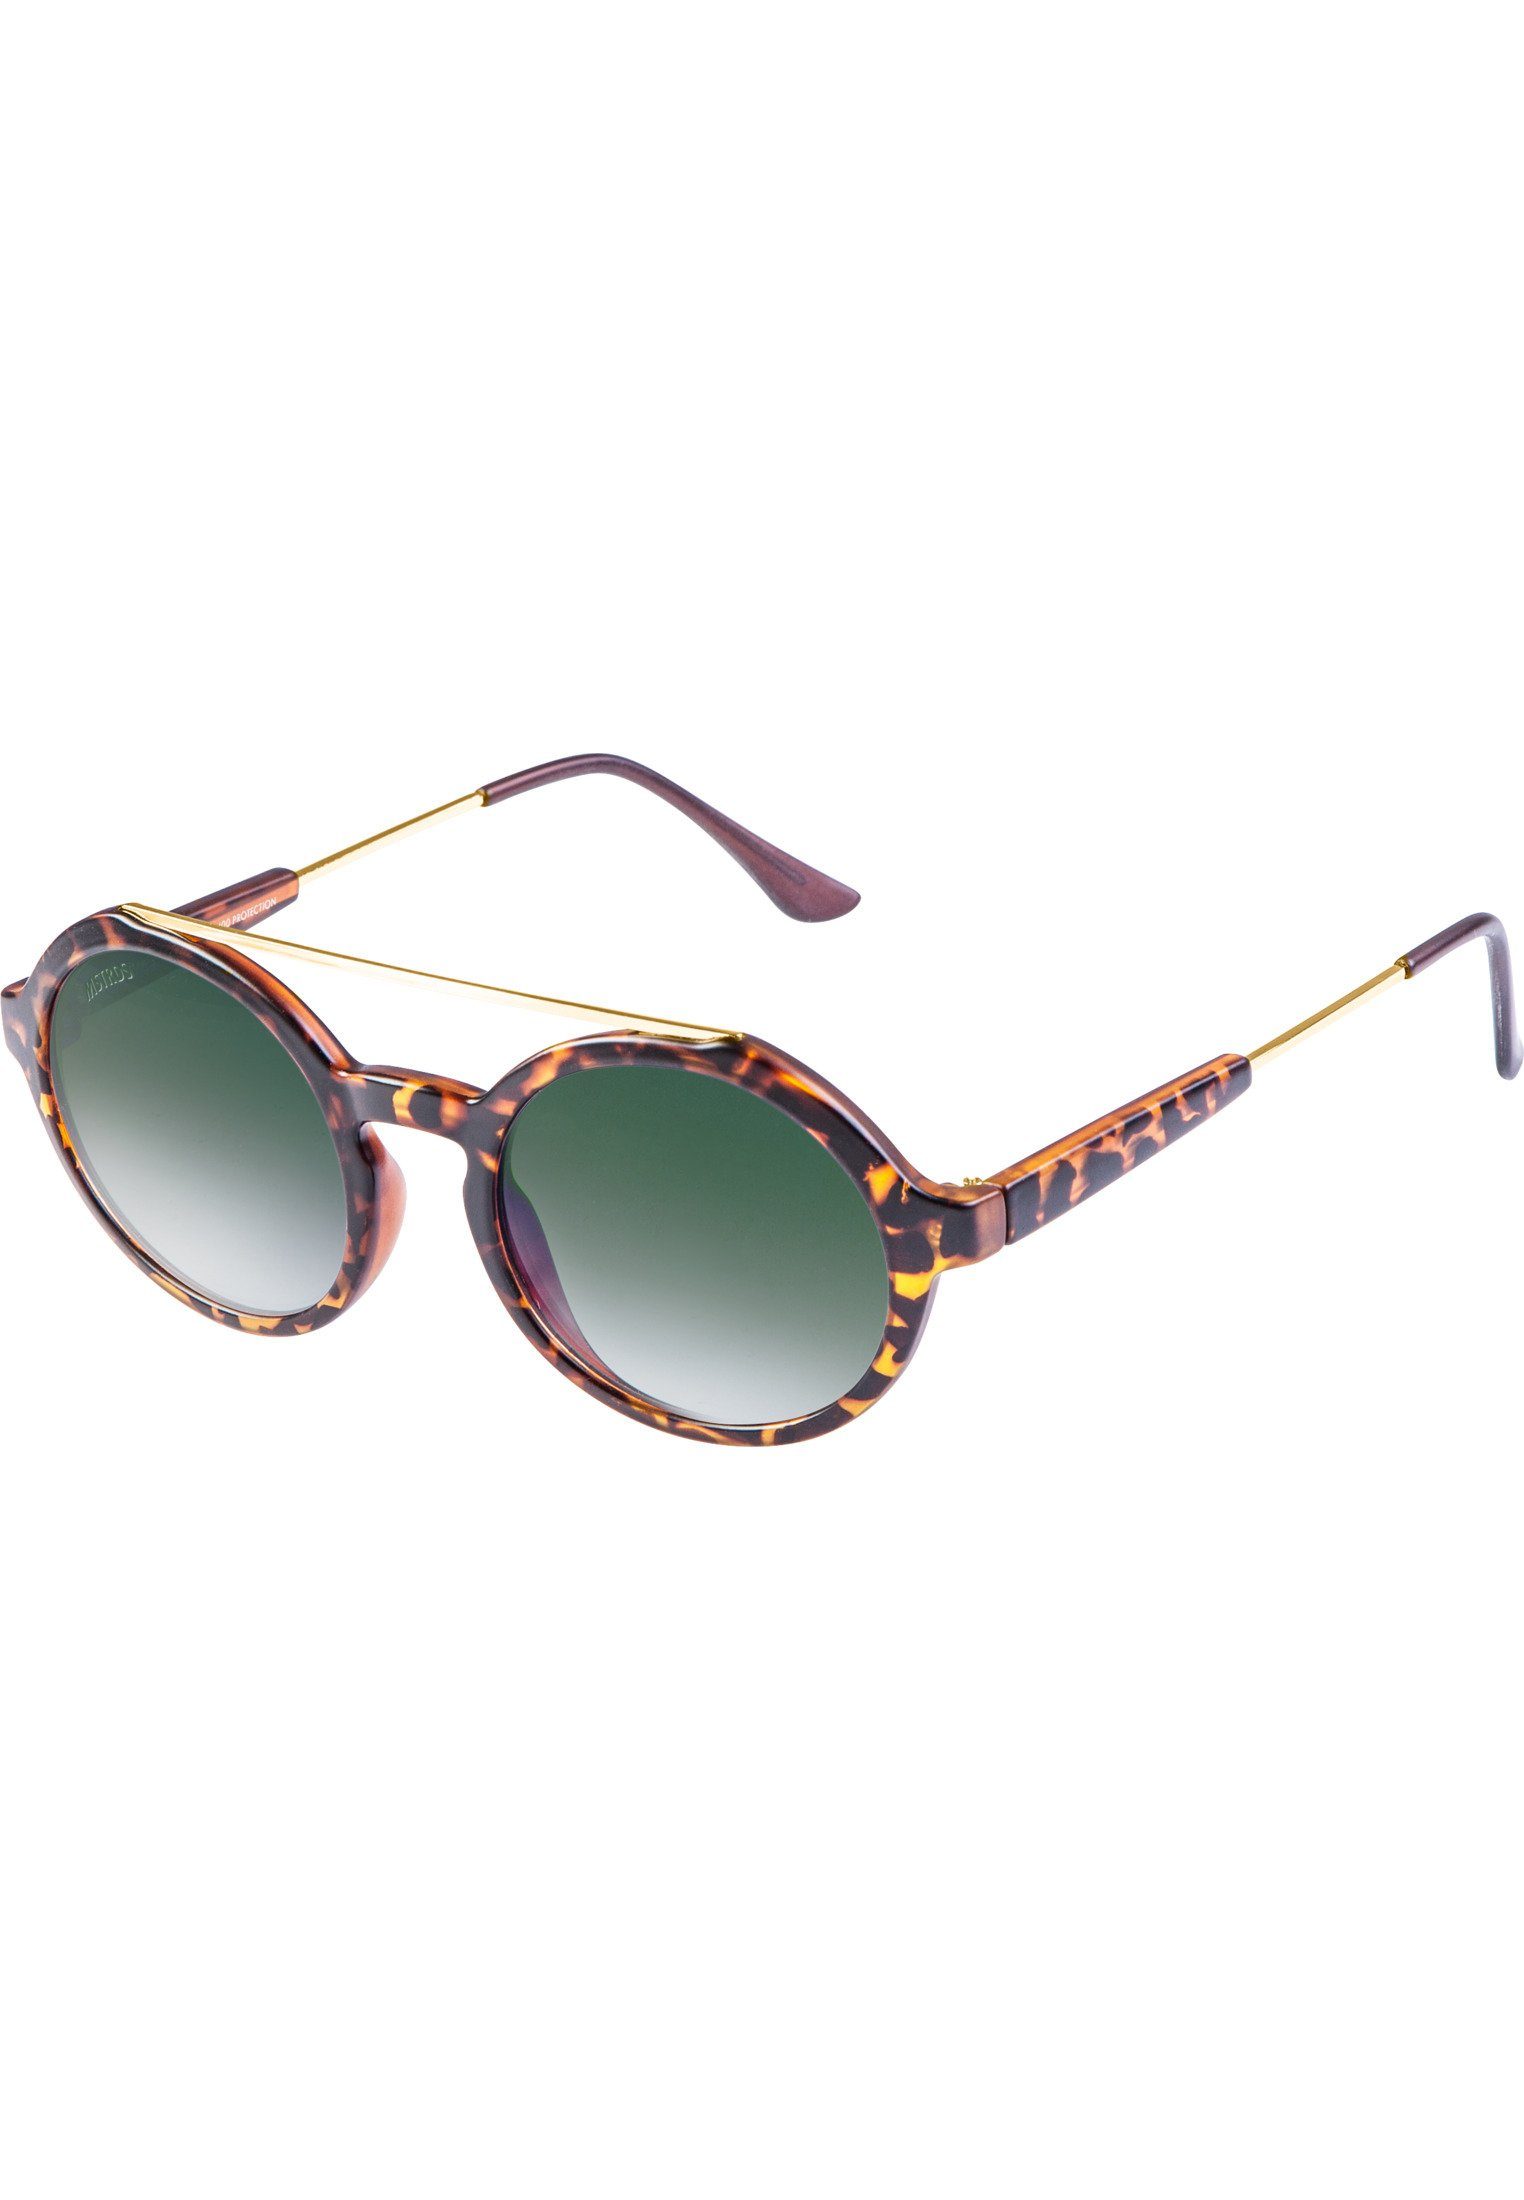 Accessoires Sunglasses Space MSTRDS Sonnenbrille Retro havanna/green